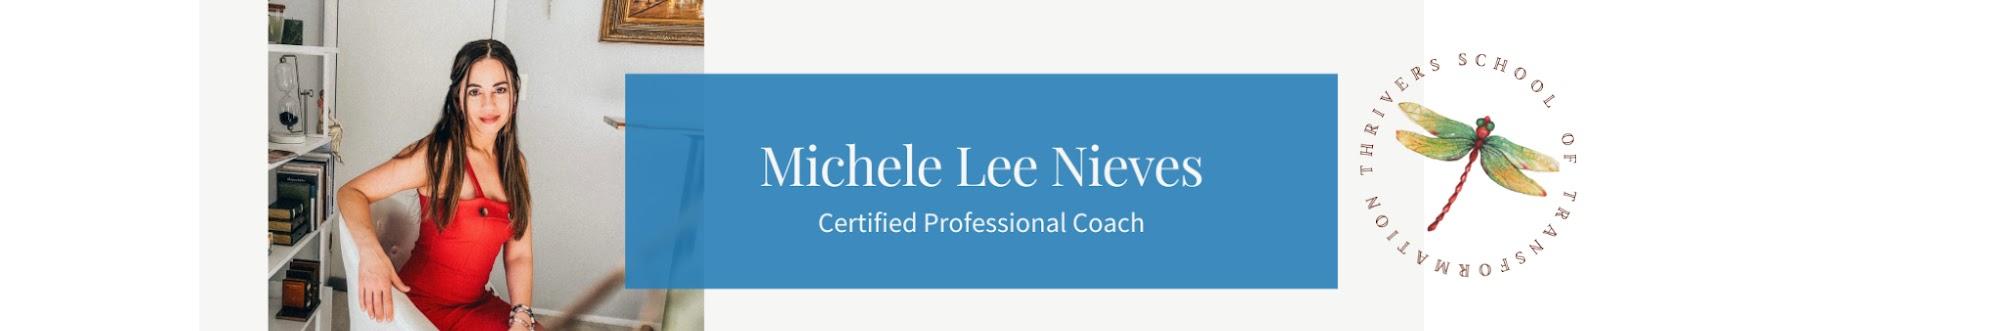 Michele Lee Nieves Coaching